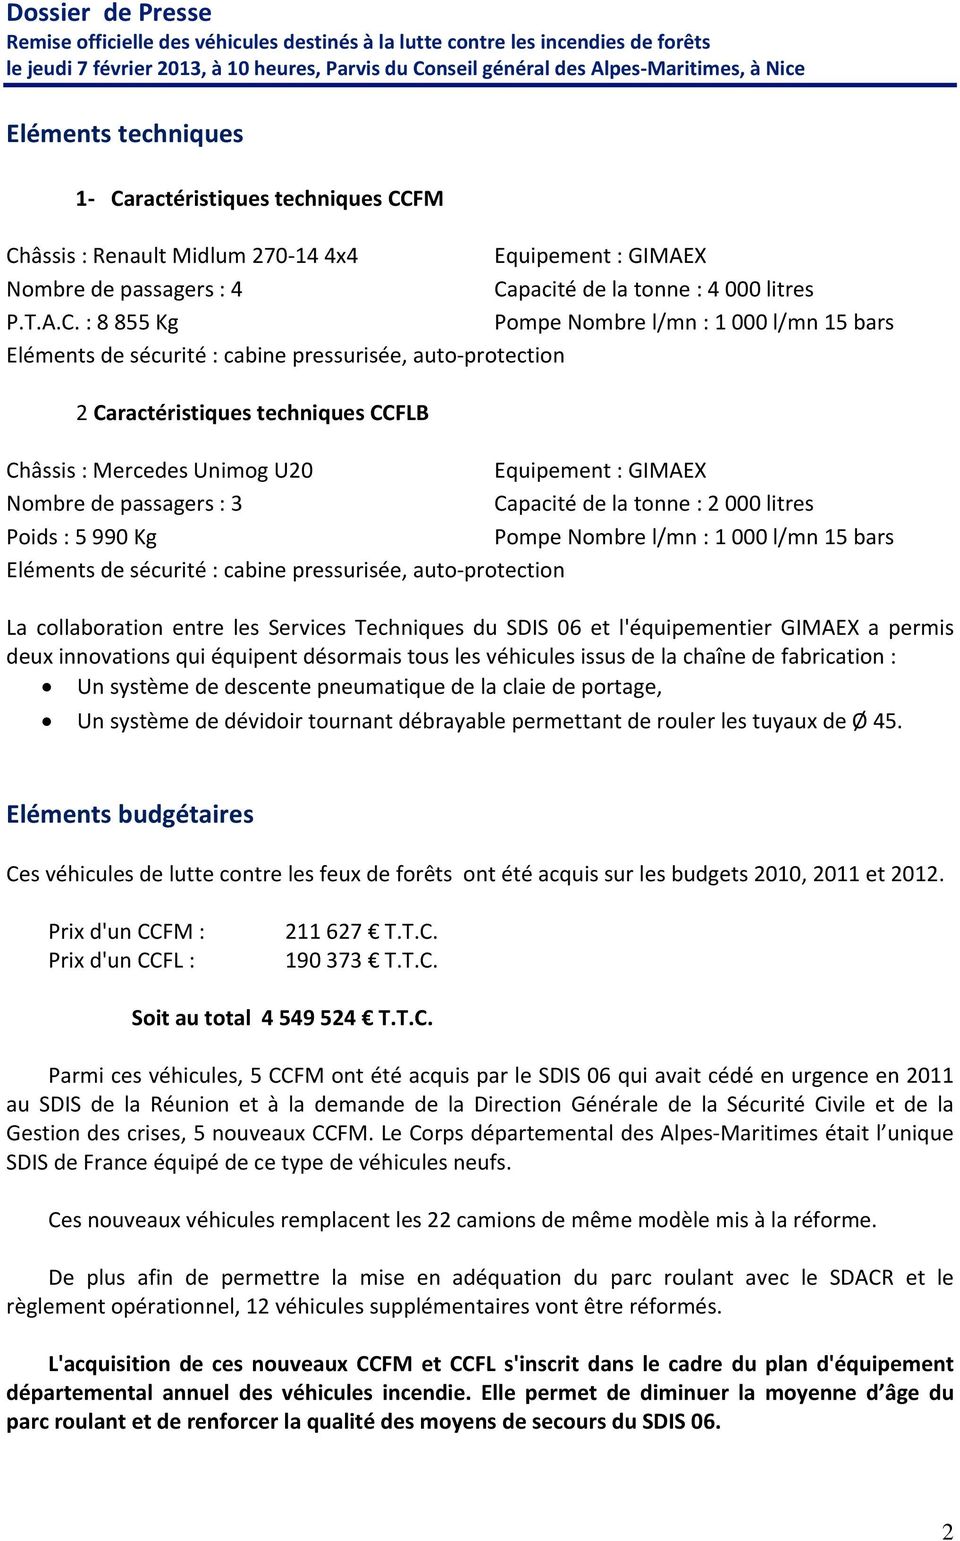 FM Châssis : Renault Midlum 270 14 4x4 Equipement : GIMAEX Nombre de passagers : 4 Capacité de la tonne : 4 000 litres P.T.A.C. : 8 855 Kg Pompe Nombre l/mn : 1 000 l/mn 15 bars Eléments de sécurité